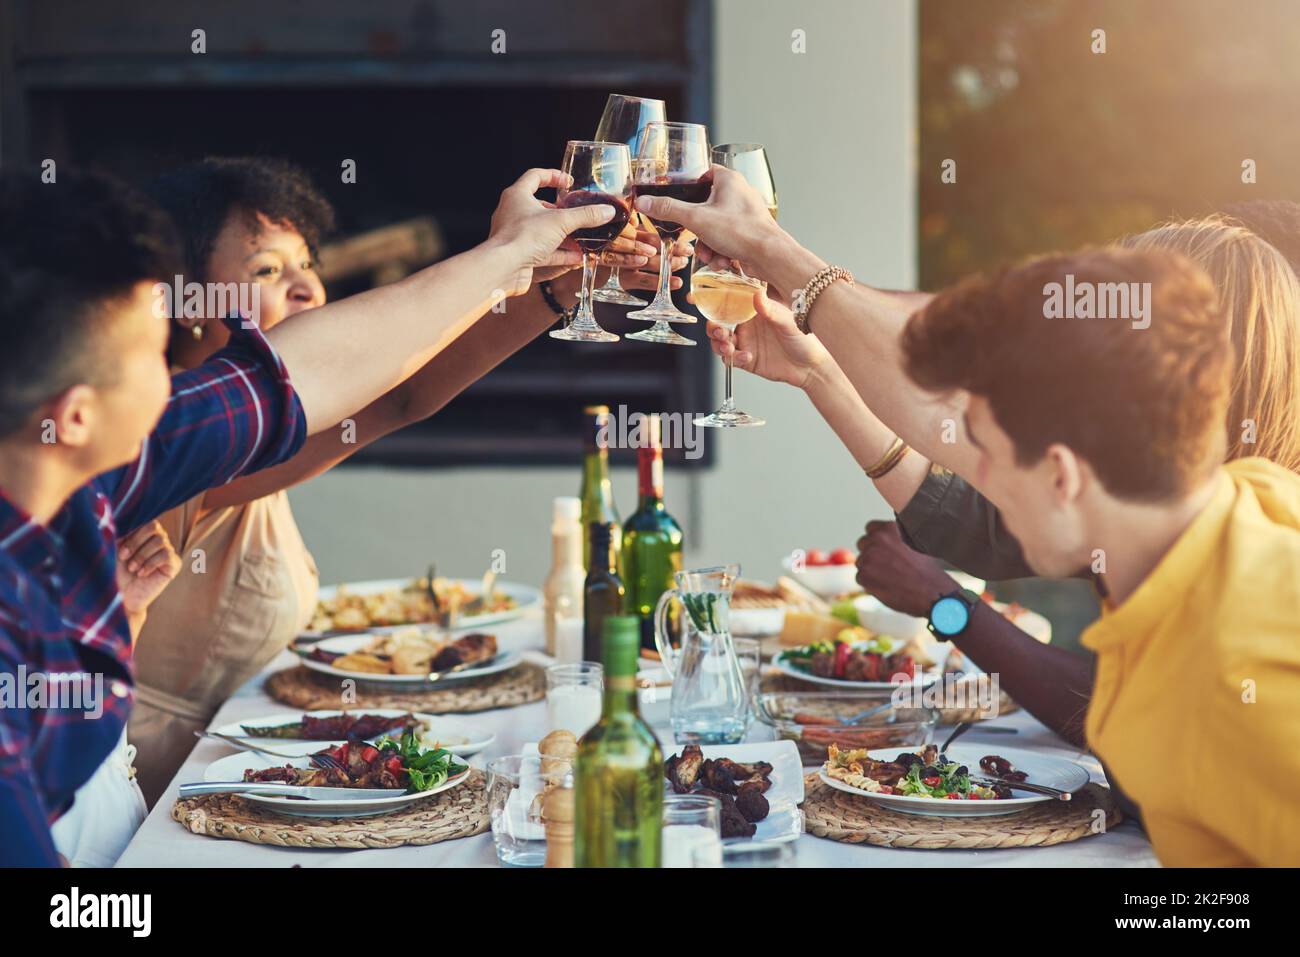 Partager un toast avec la meilleure entreprise au monde. Photo d'un groupe d'amis qui lève leurs lunettes pour un toast tout en étant assis autour d'une table ensemble à l'extérieur. Banque D'Images